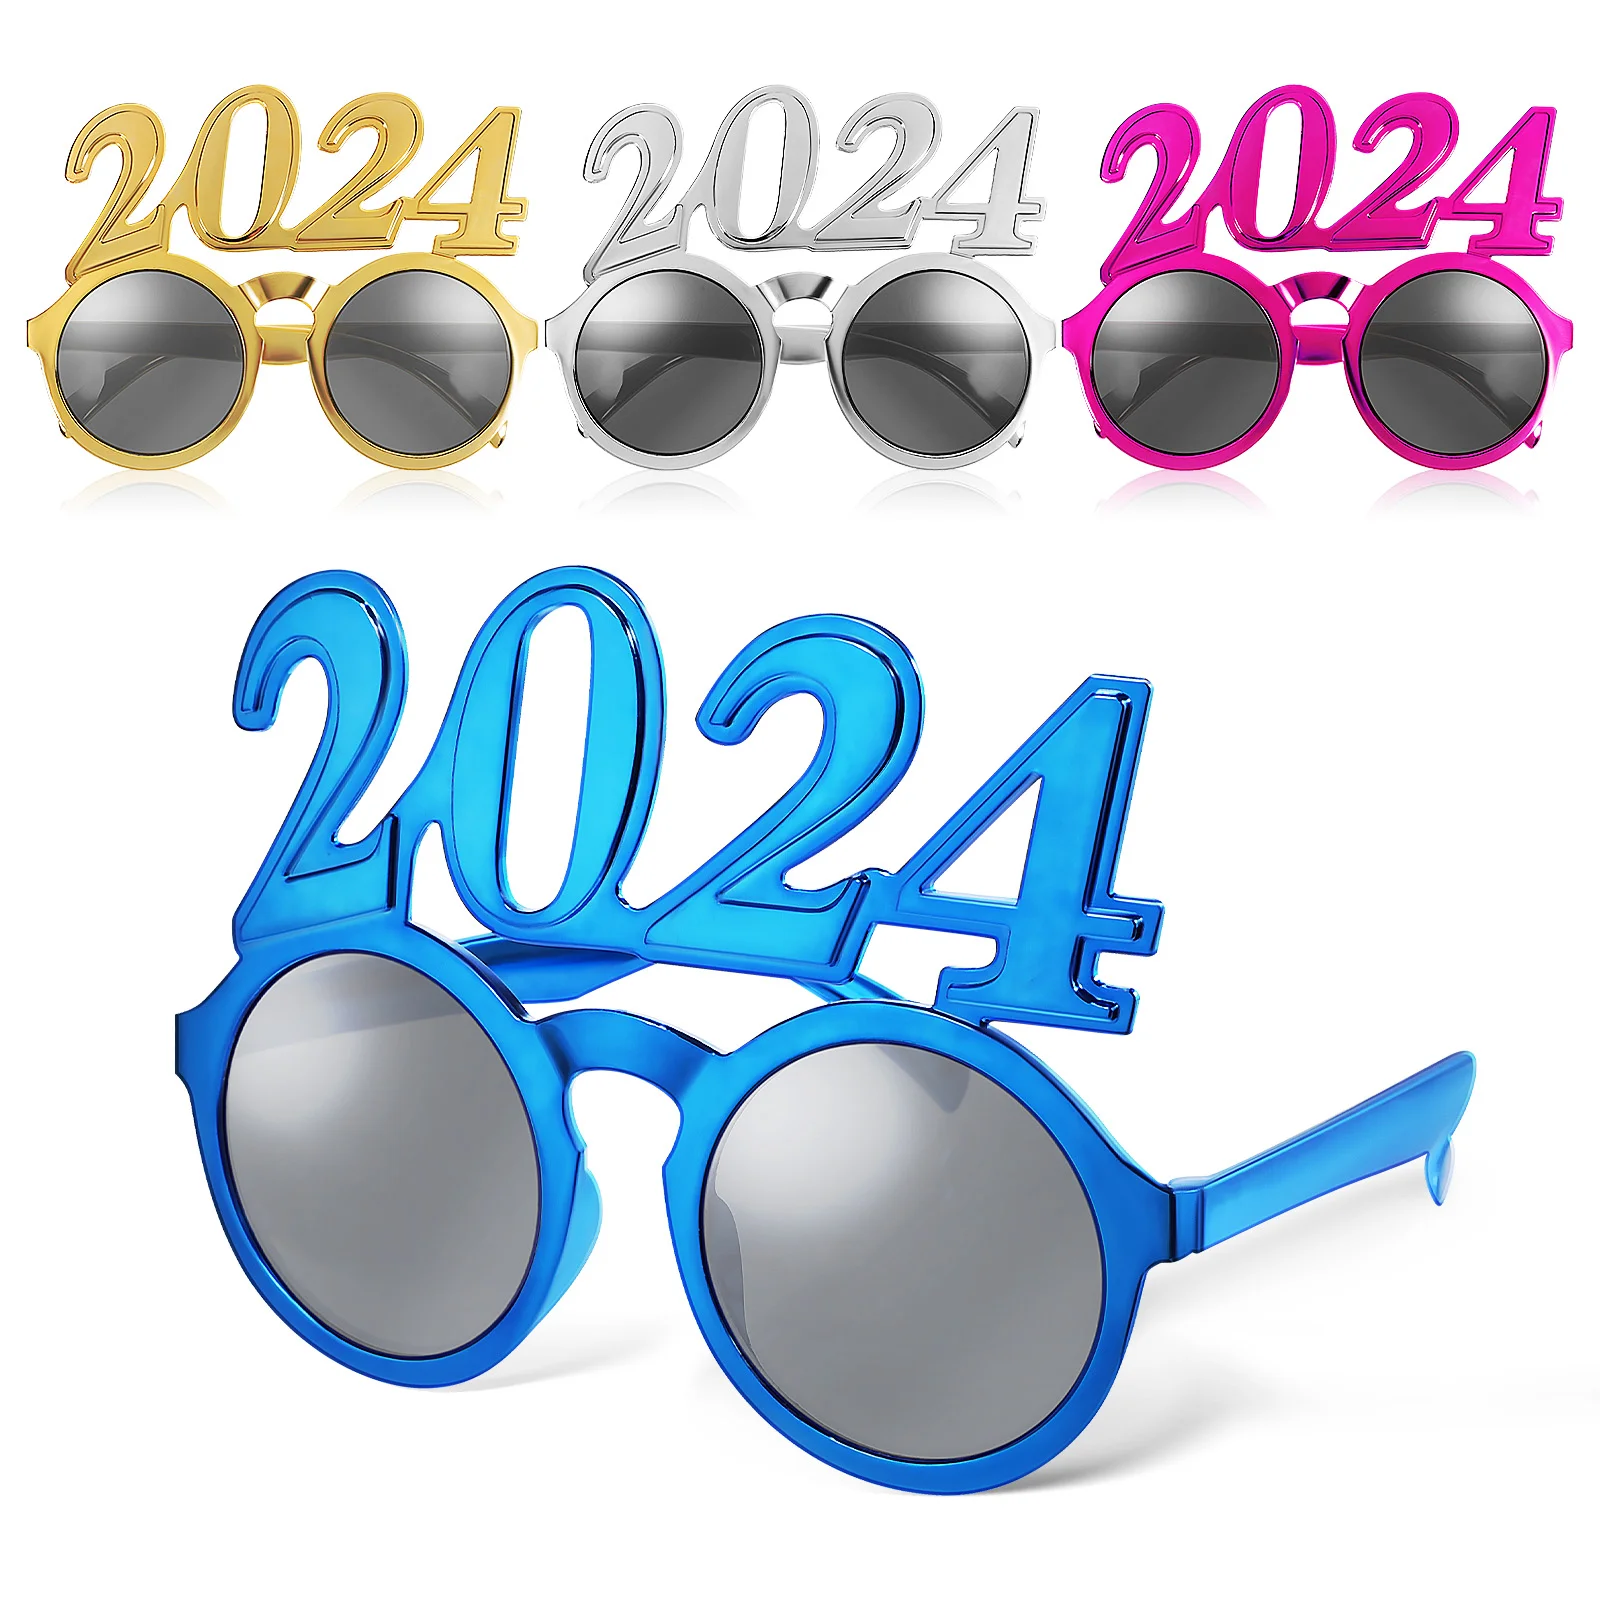 

Новогодние очки, праздничные очки, фотореквизиты для фотографирования Нового года, цифровые очки